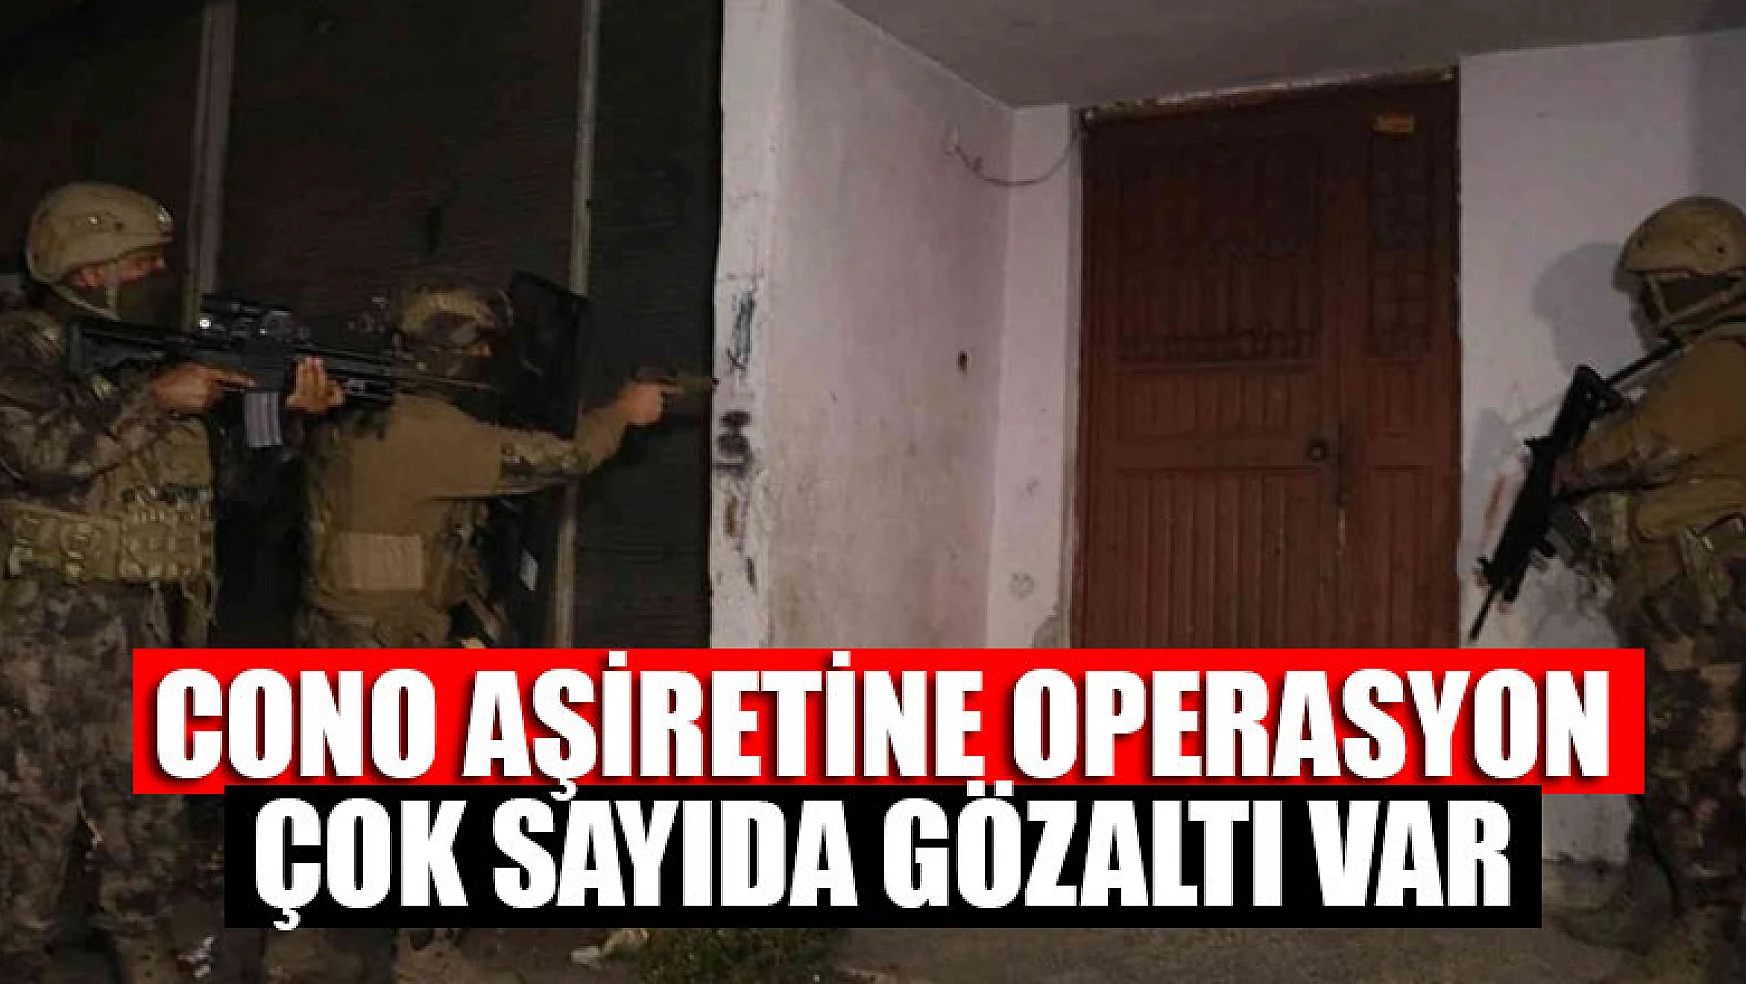 Adana'da 'Cono Aşiretine' operasyon: Çok sayıda gözaltı var